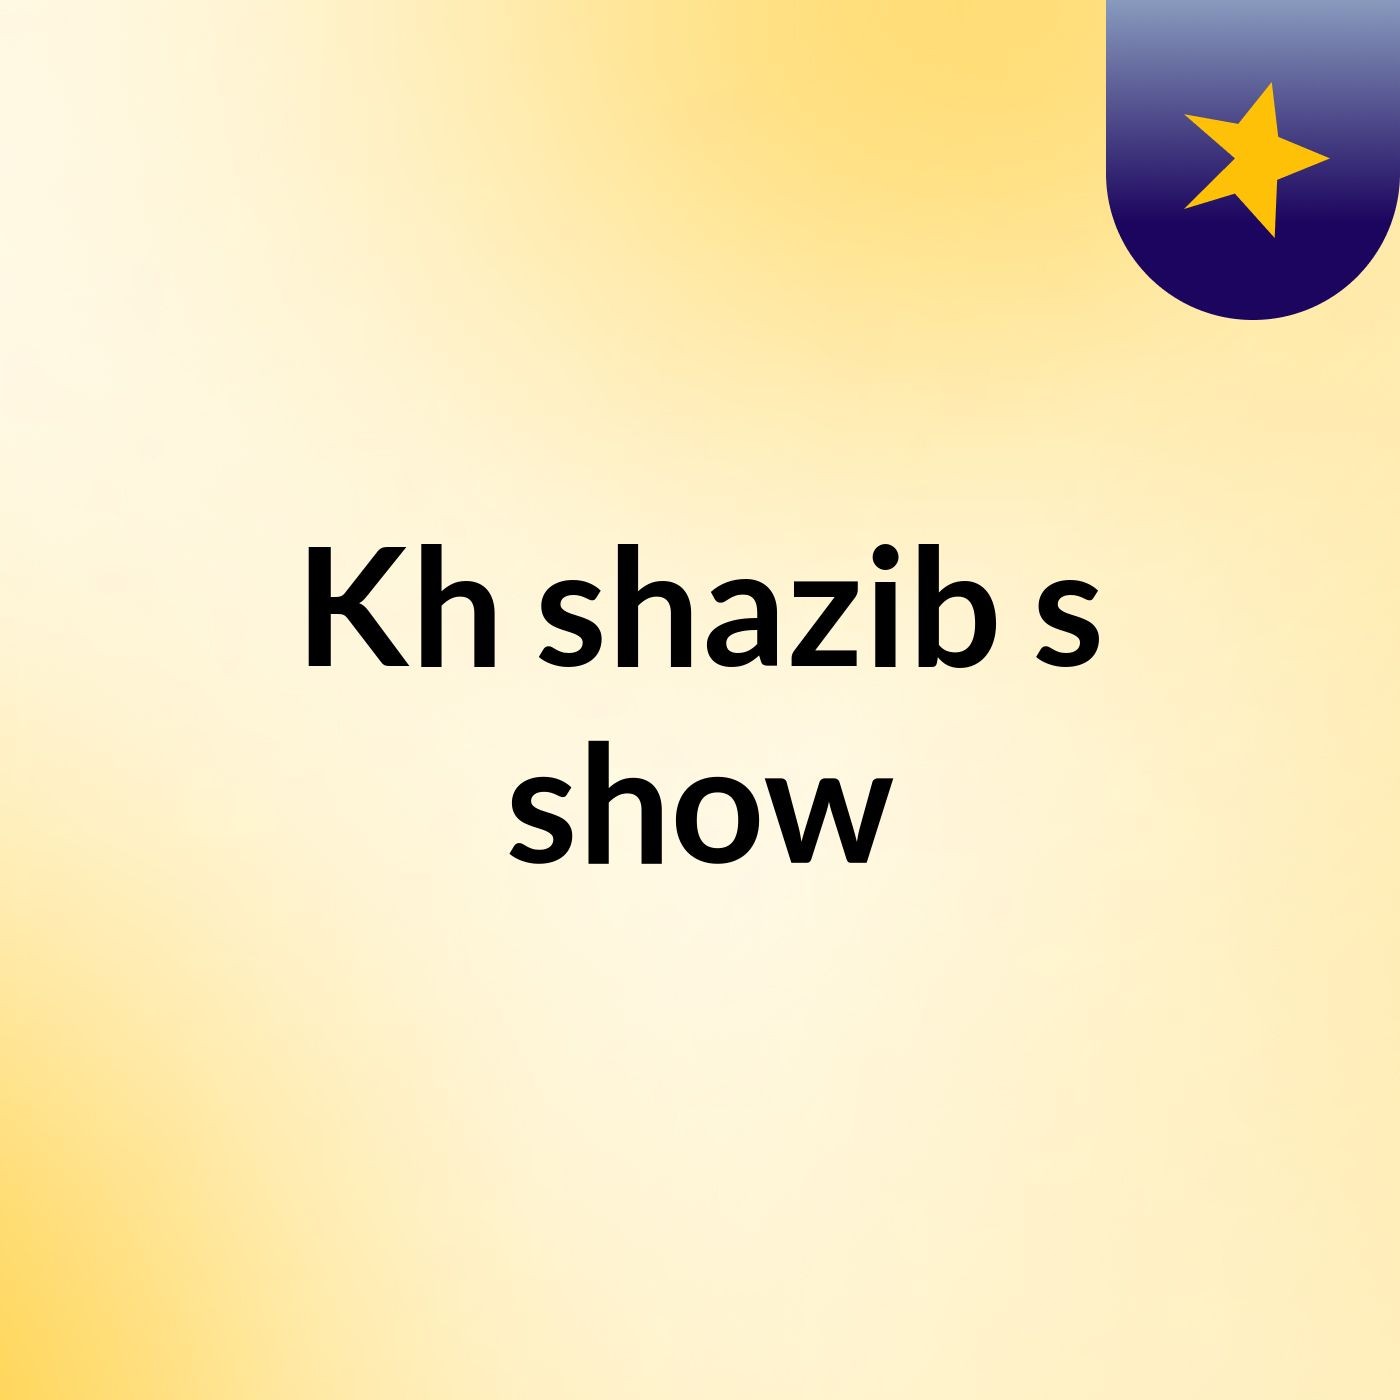 Kh shazib's show